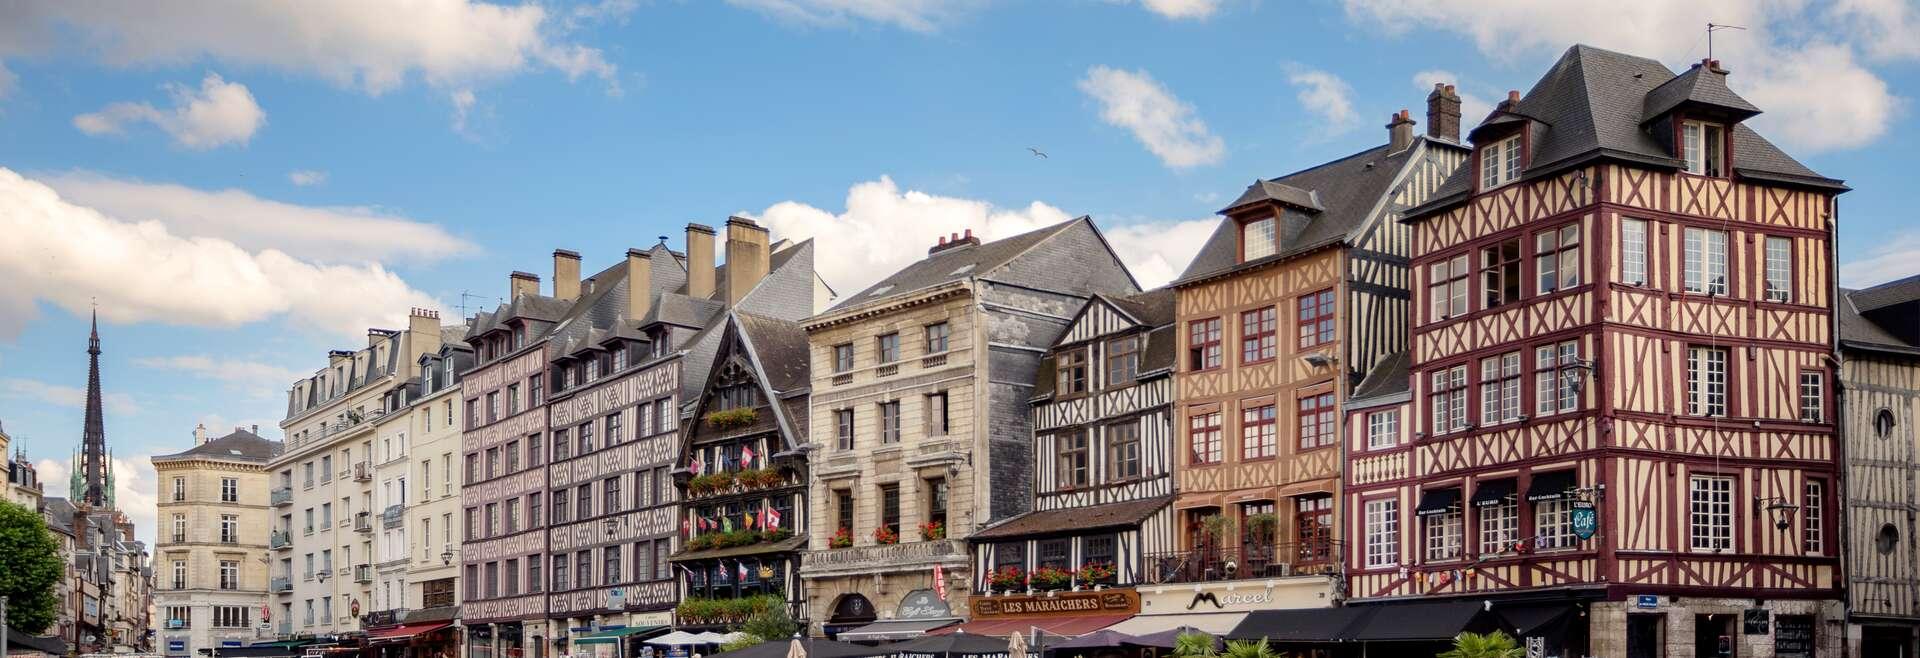 Séjour linguistique France, Rouen, Stadt